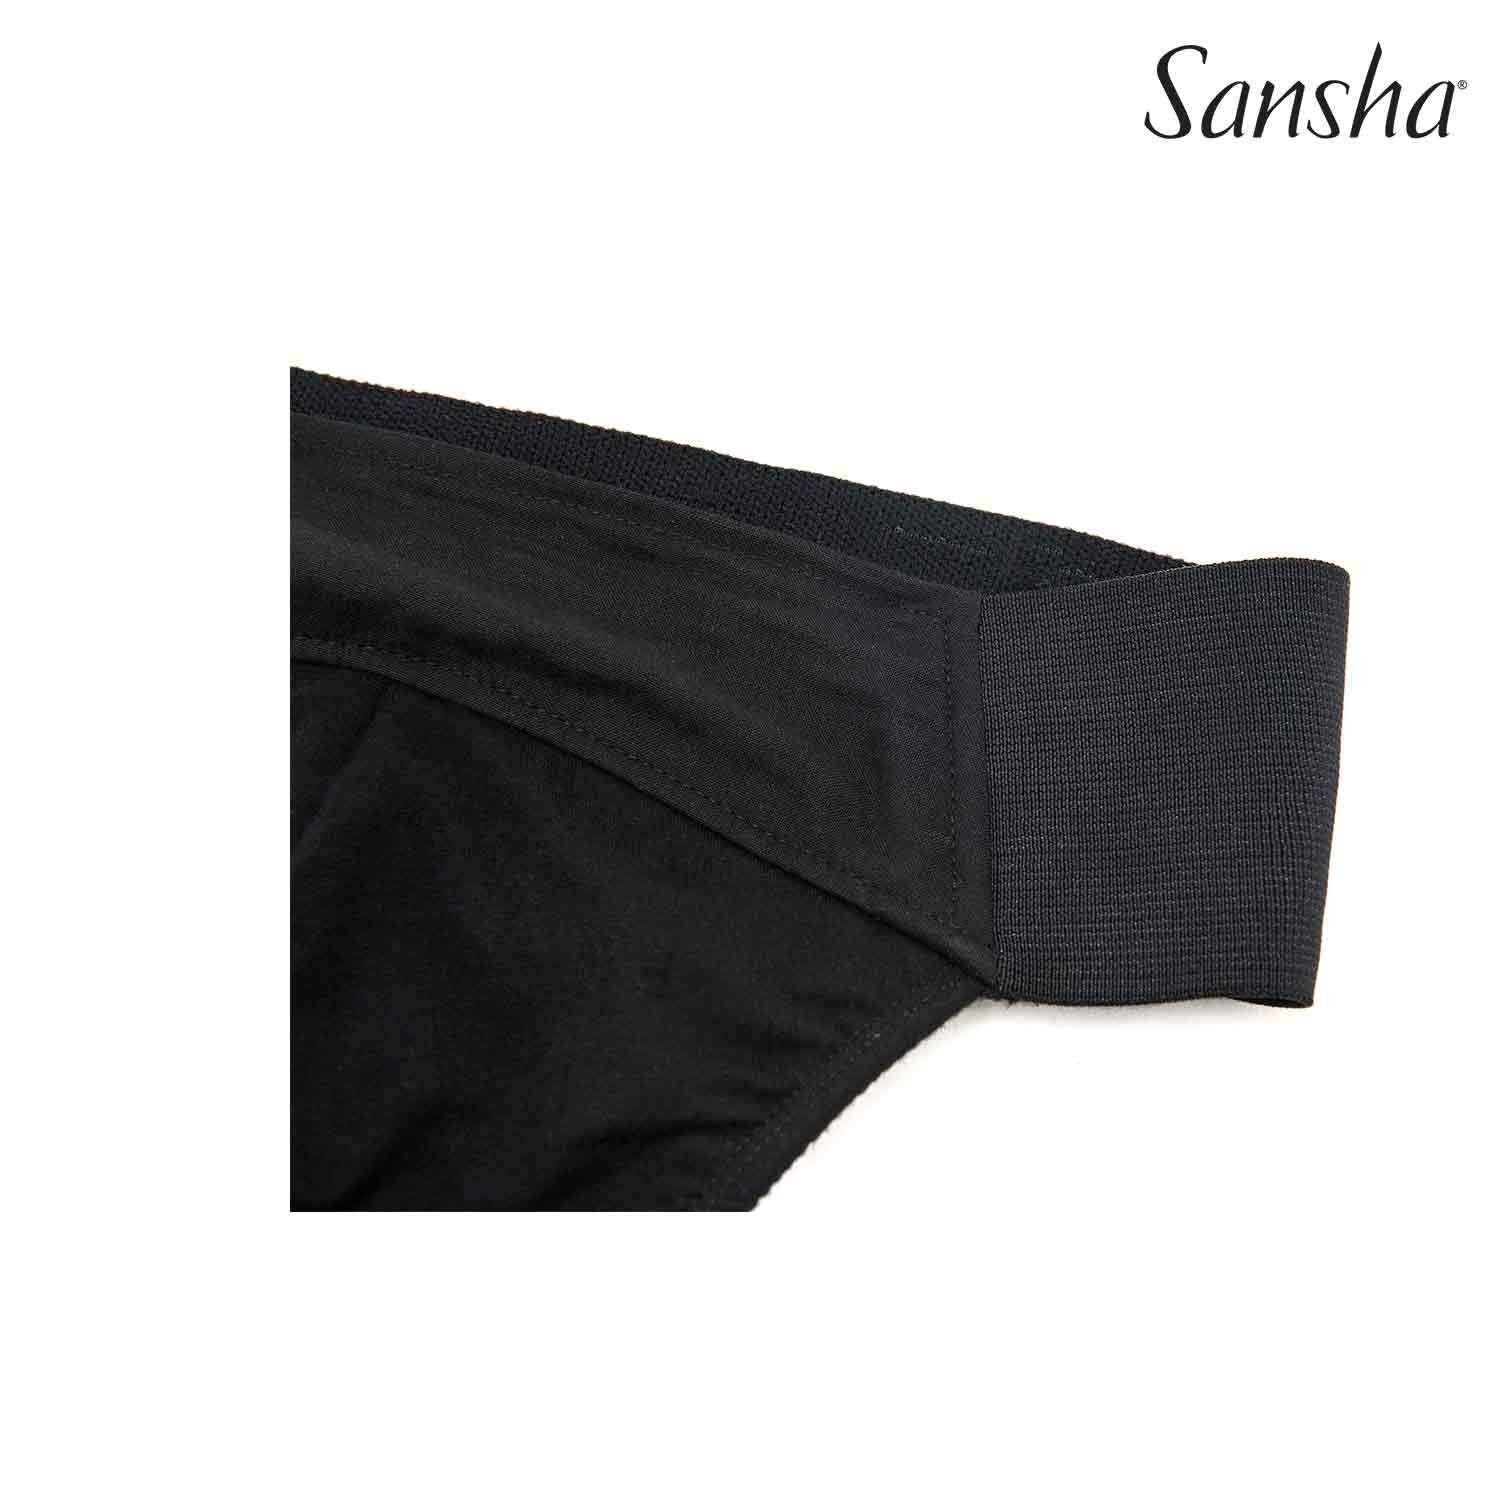 Sansha dance belt DB7211C